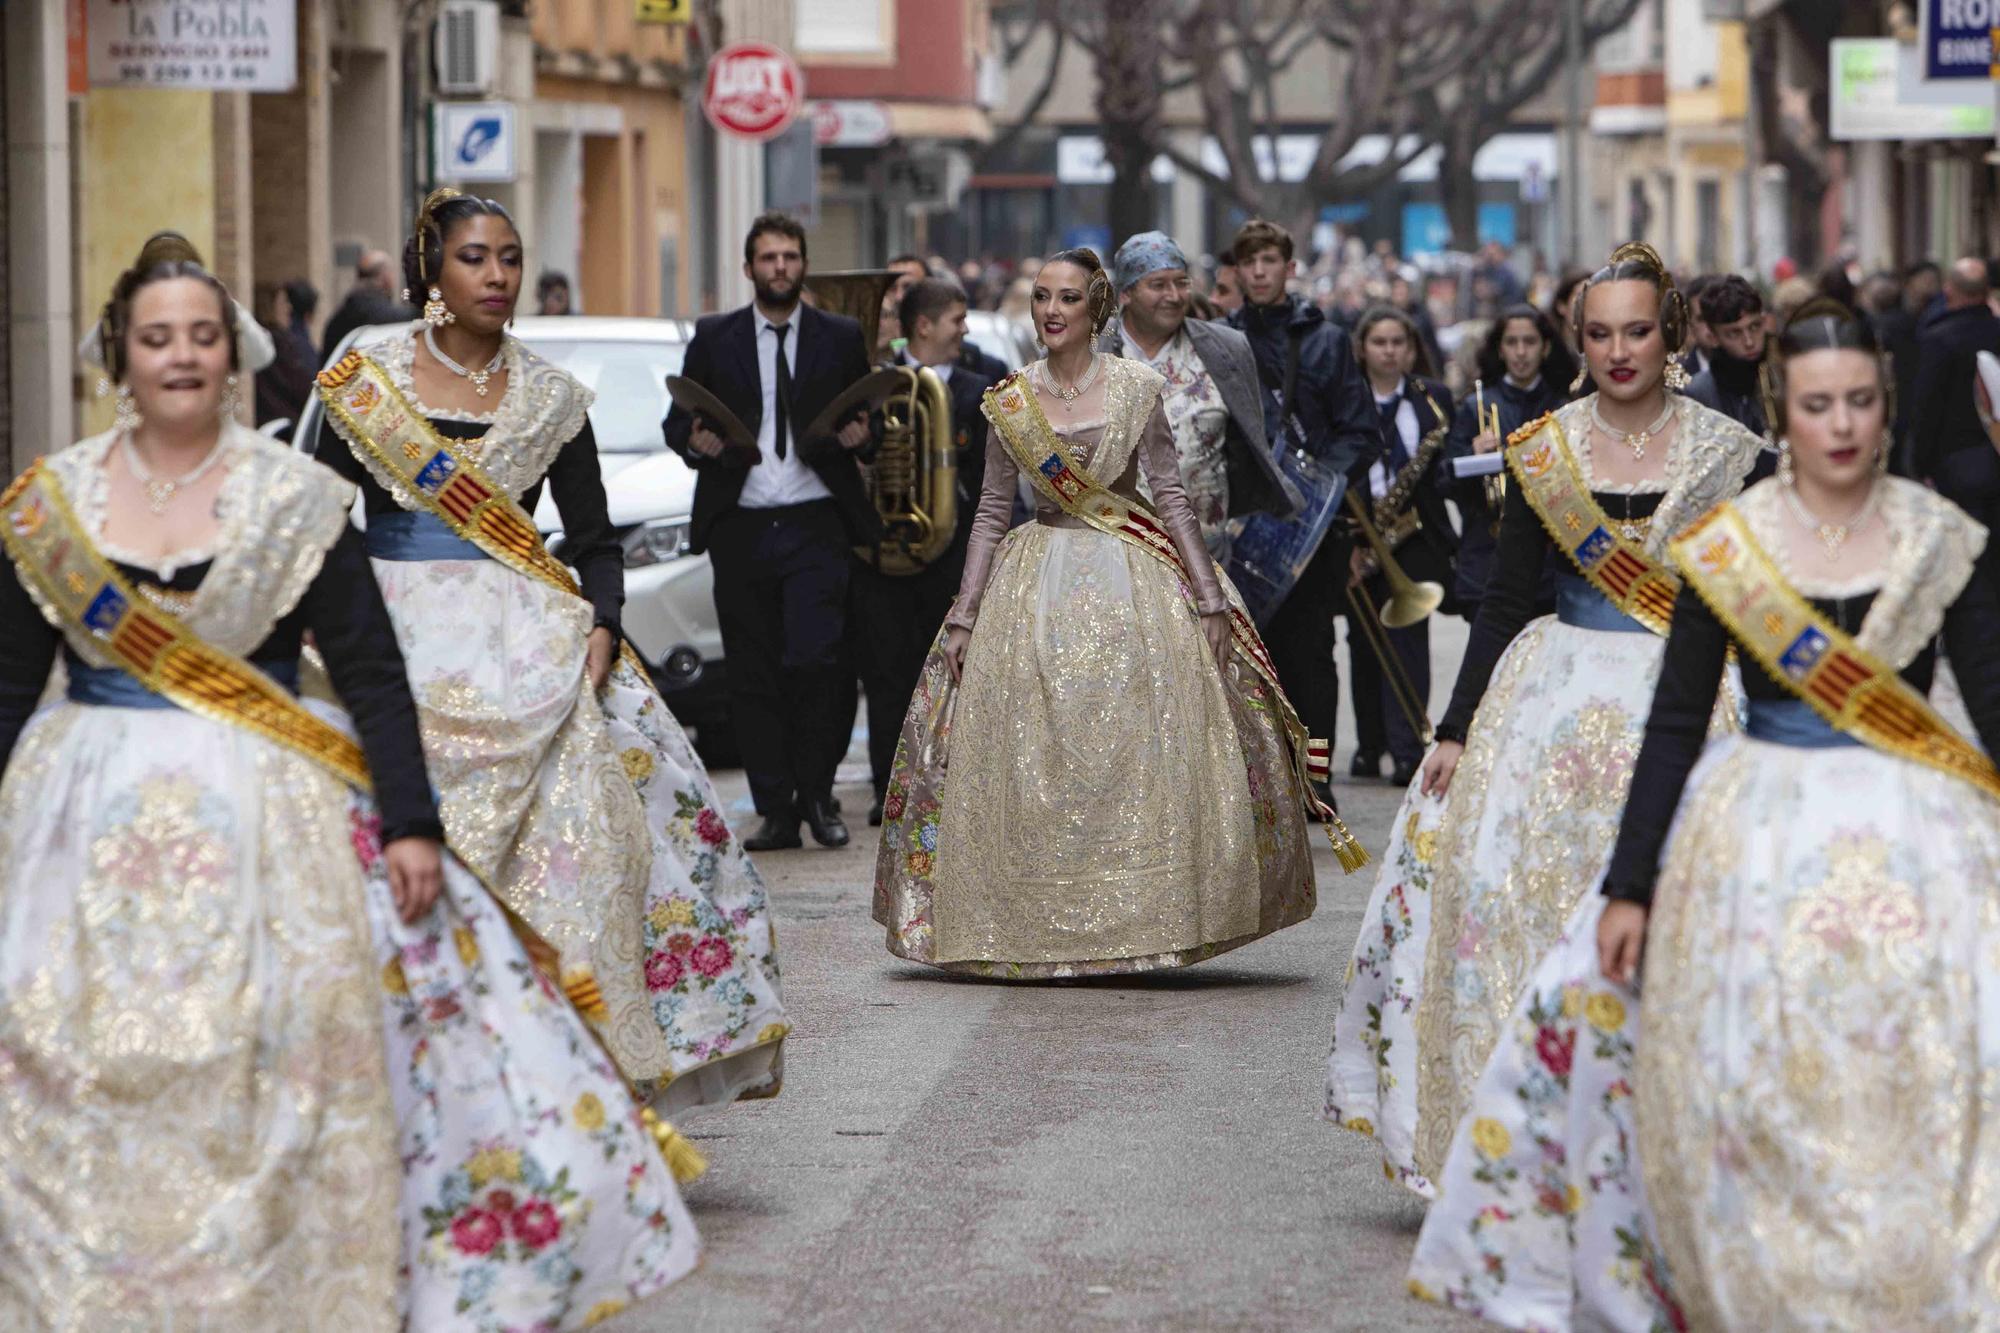 Los tradicionales pasodobles falleros vuelven a las calles de Alzira